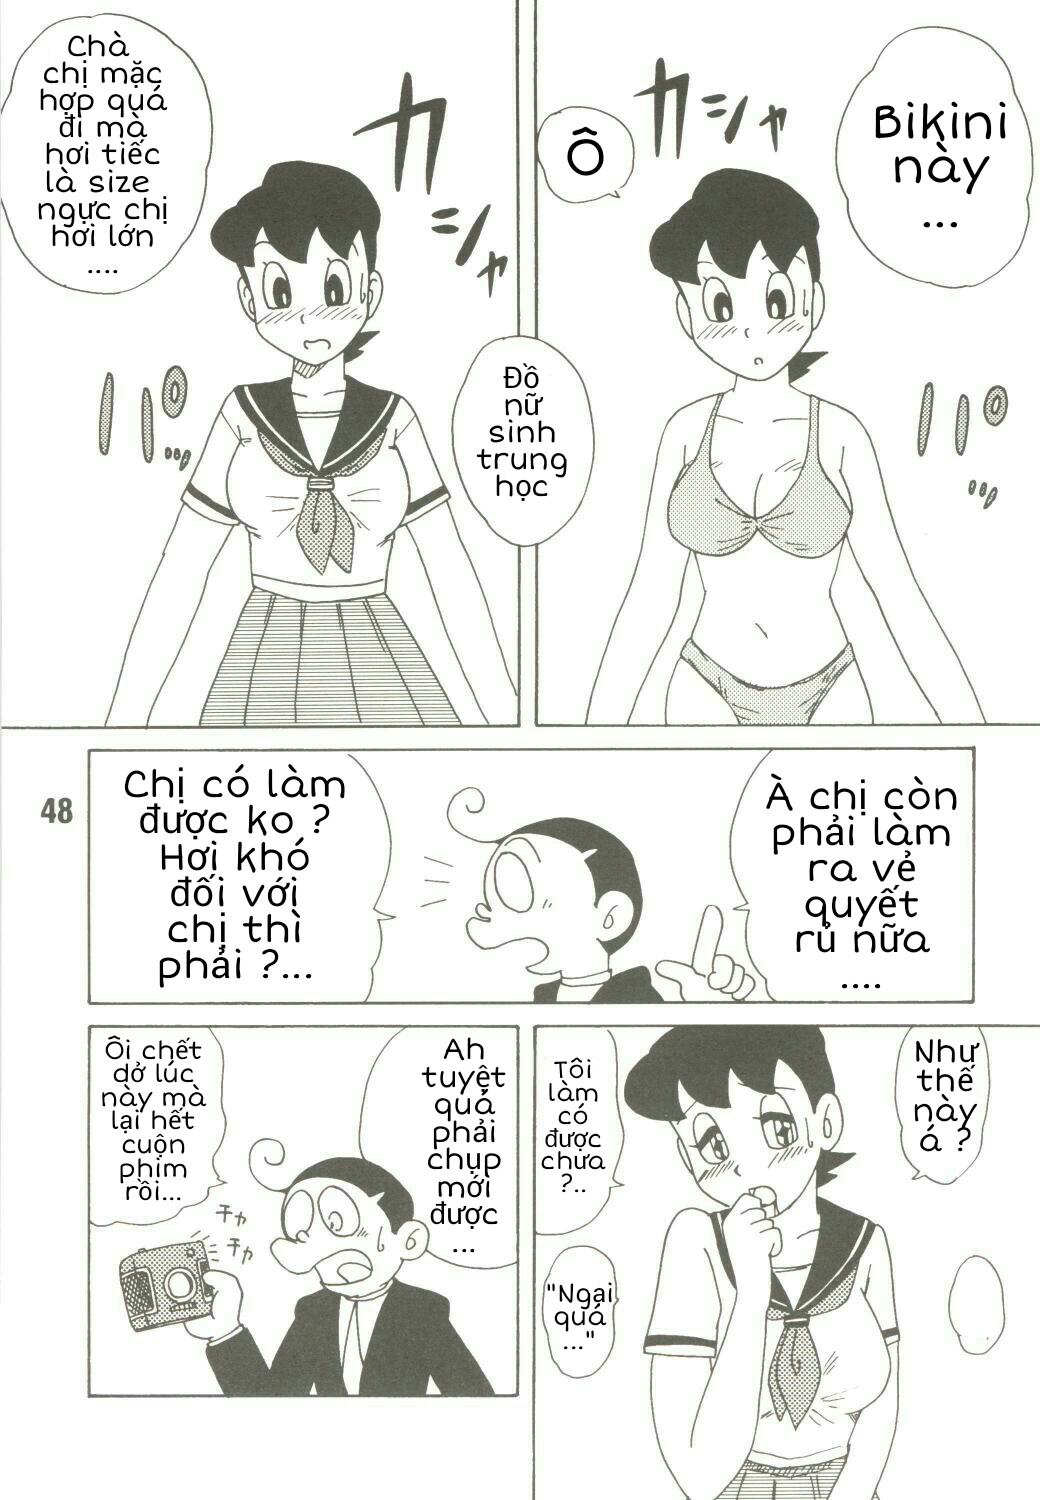 Tuyển Tập Doraemon Doujinshi 18+ Chương 39 M Xuka v ch ng b o ch Trang 6